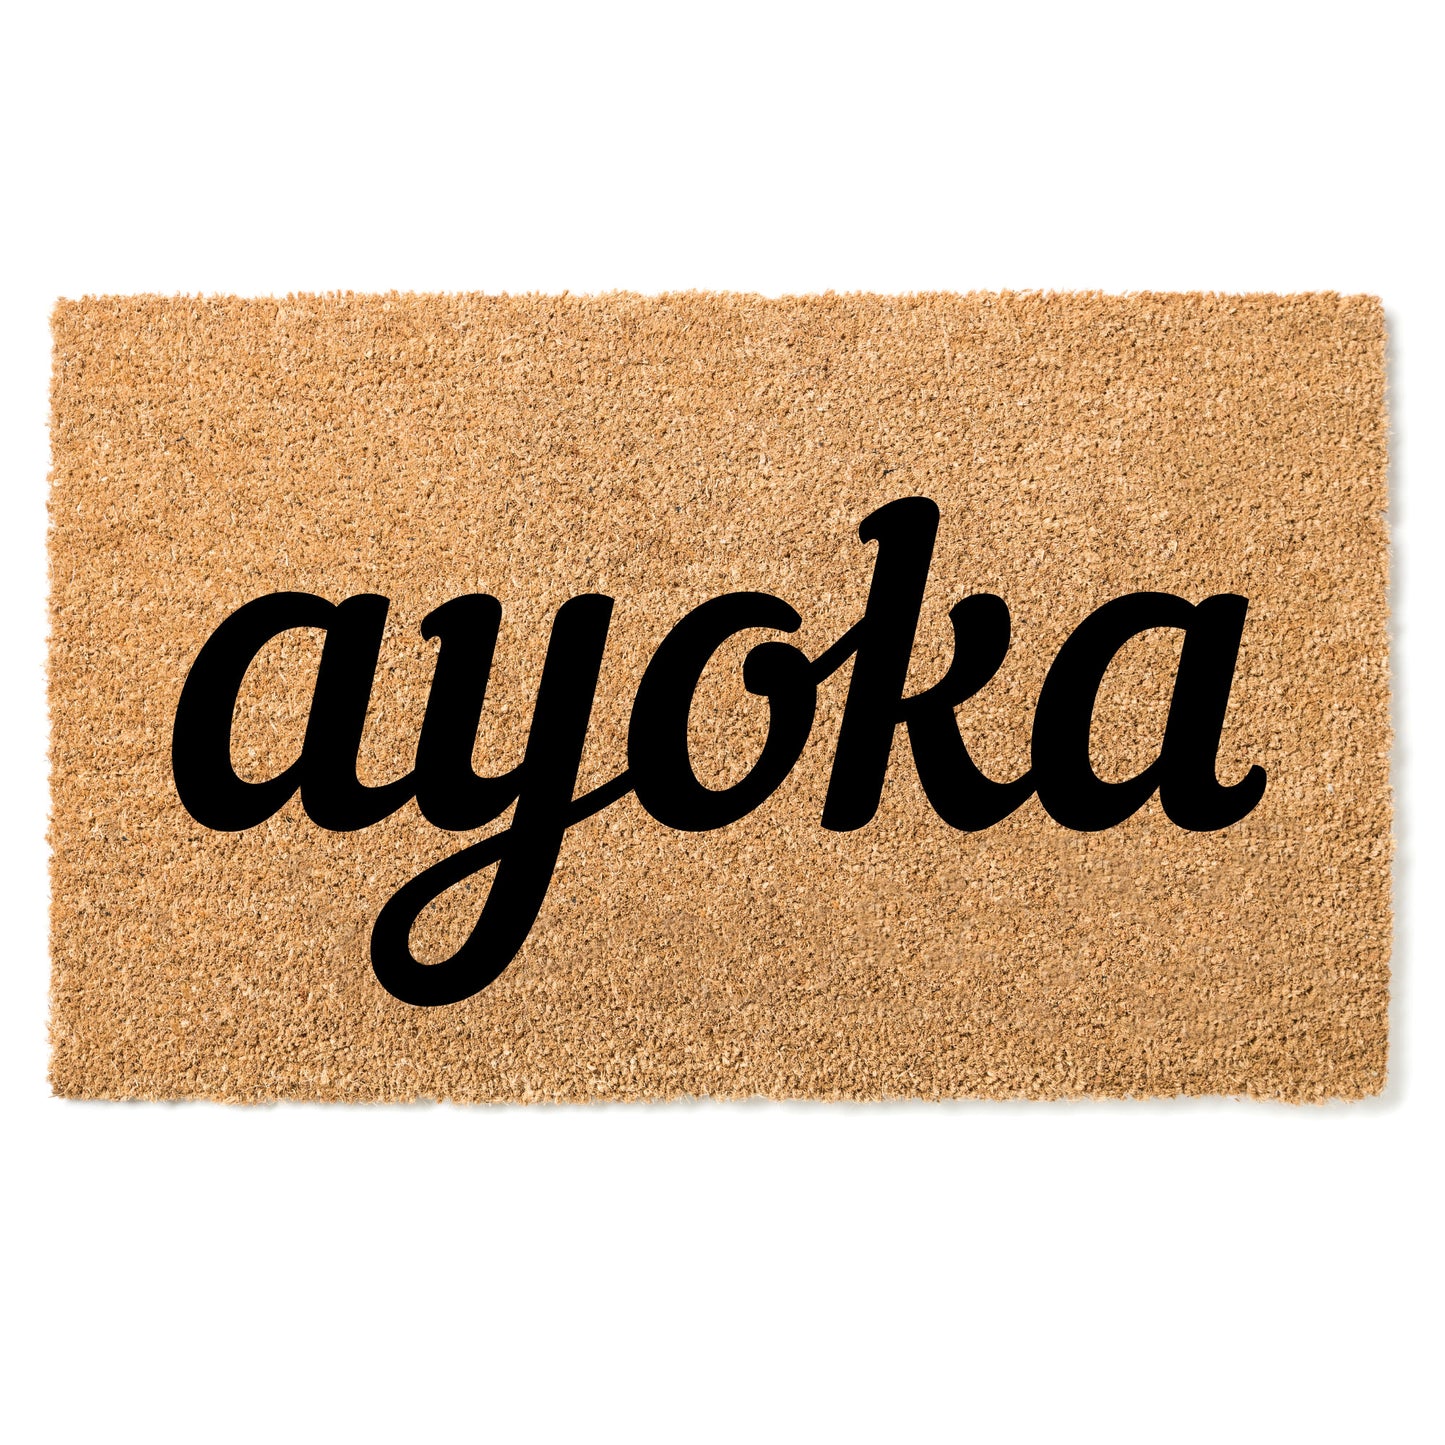 "Ayoka" door mat - Greeting in Bhete